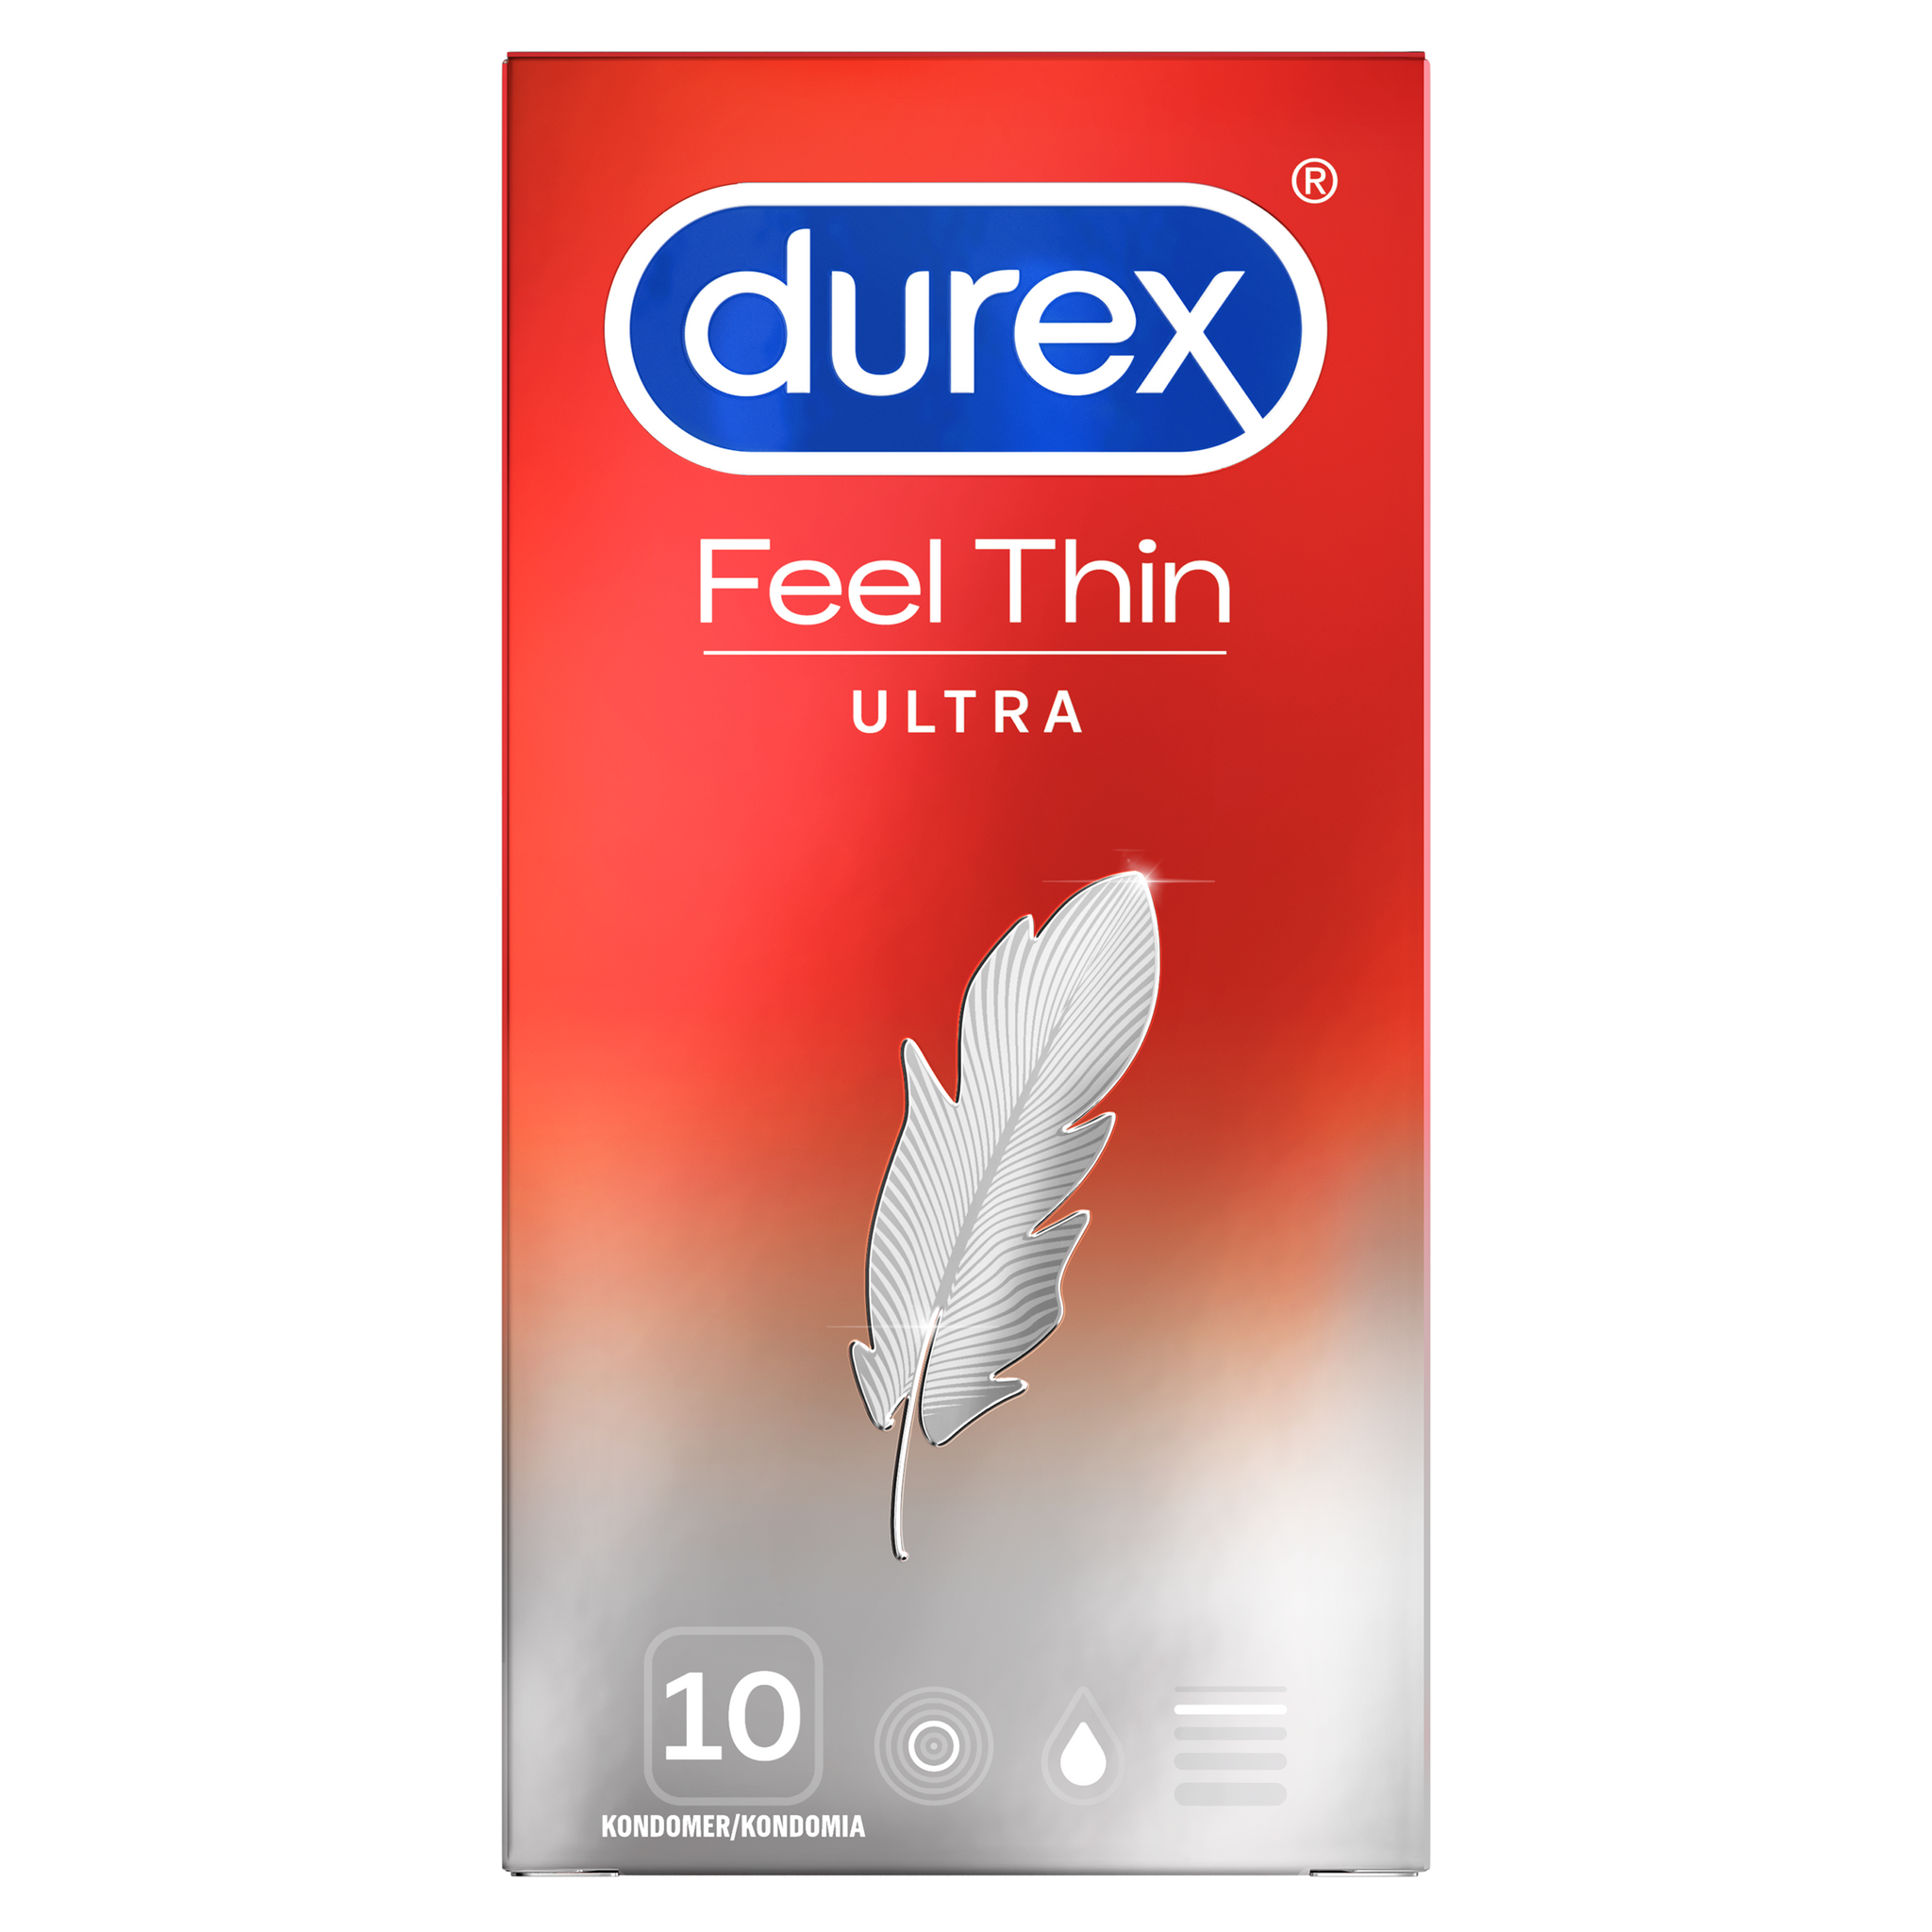 Durex tuntuu erittäin ohuelta 10 kpl.